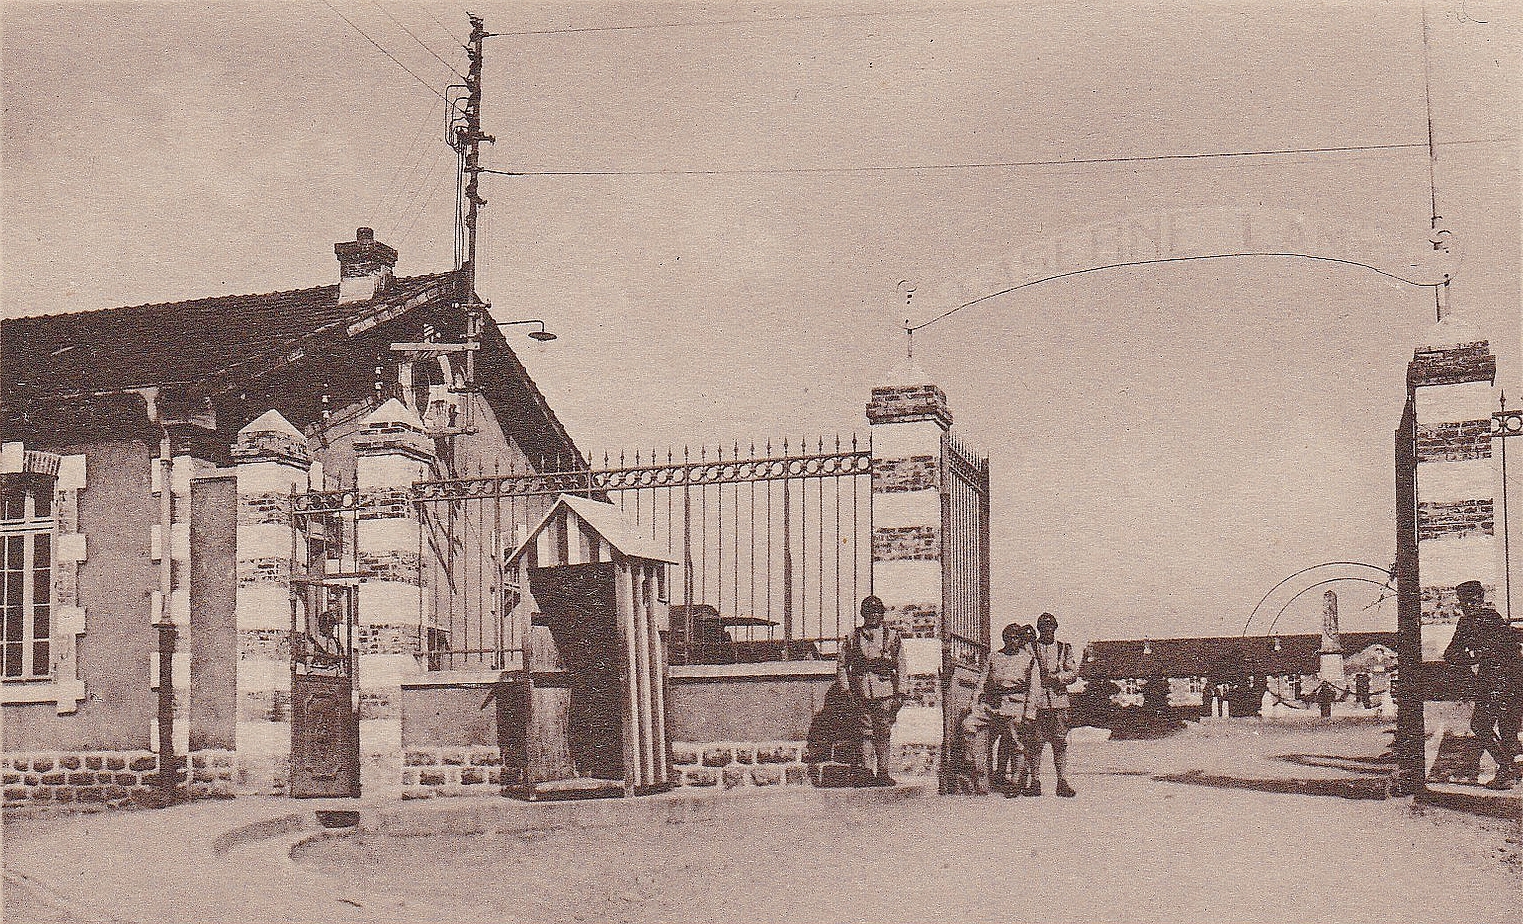 Ligne Maginot - LONGUYON - CASERNE LAMY - (Camp de sureté) - LONGUYON
Entrée de la caserne Lamy du 168° RI